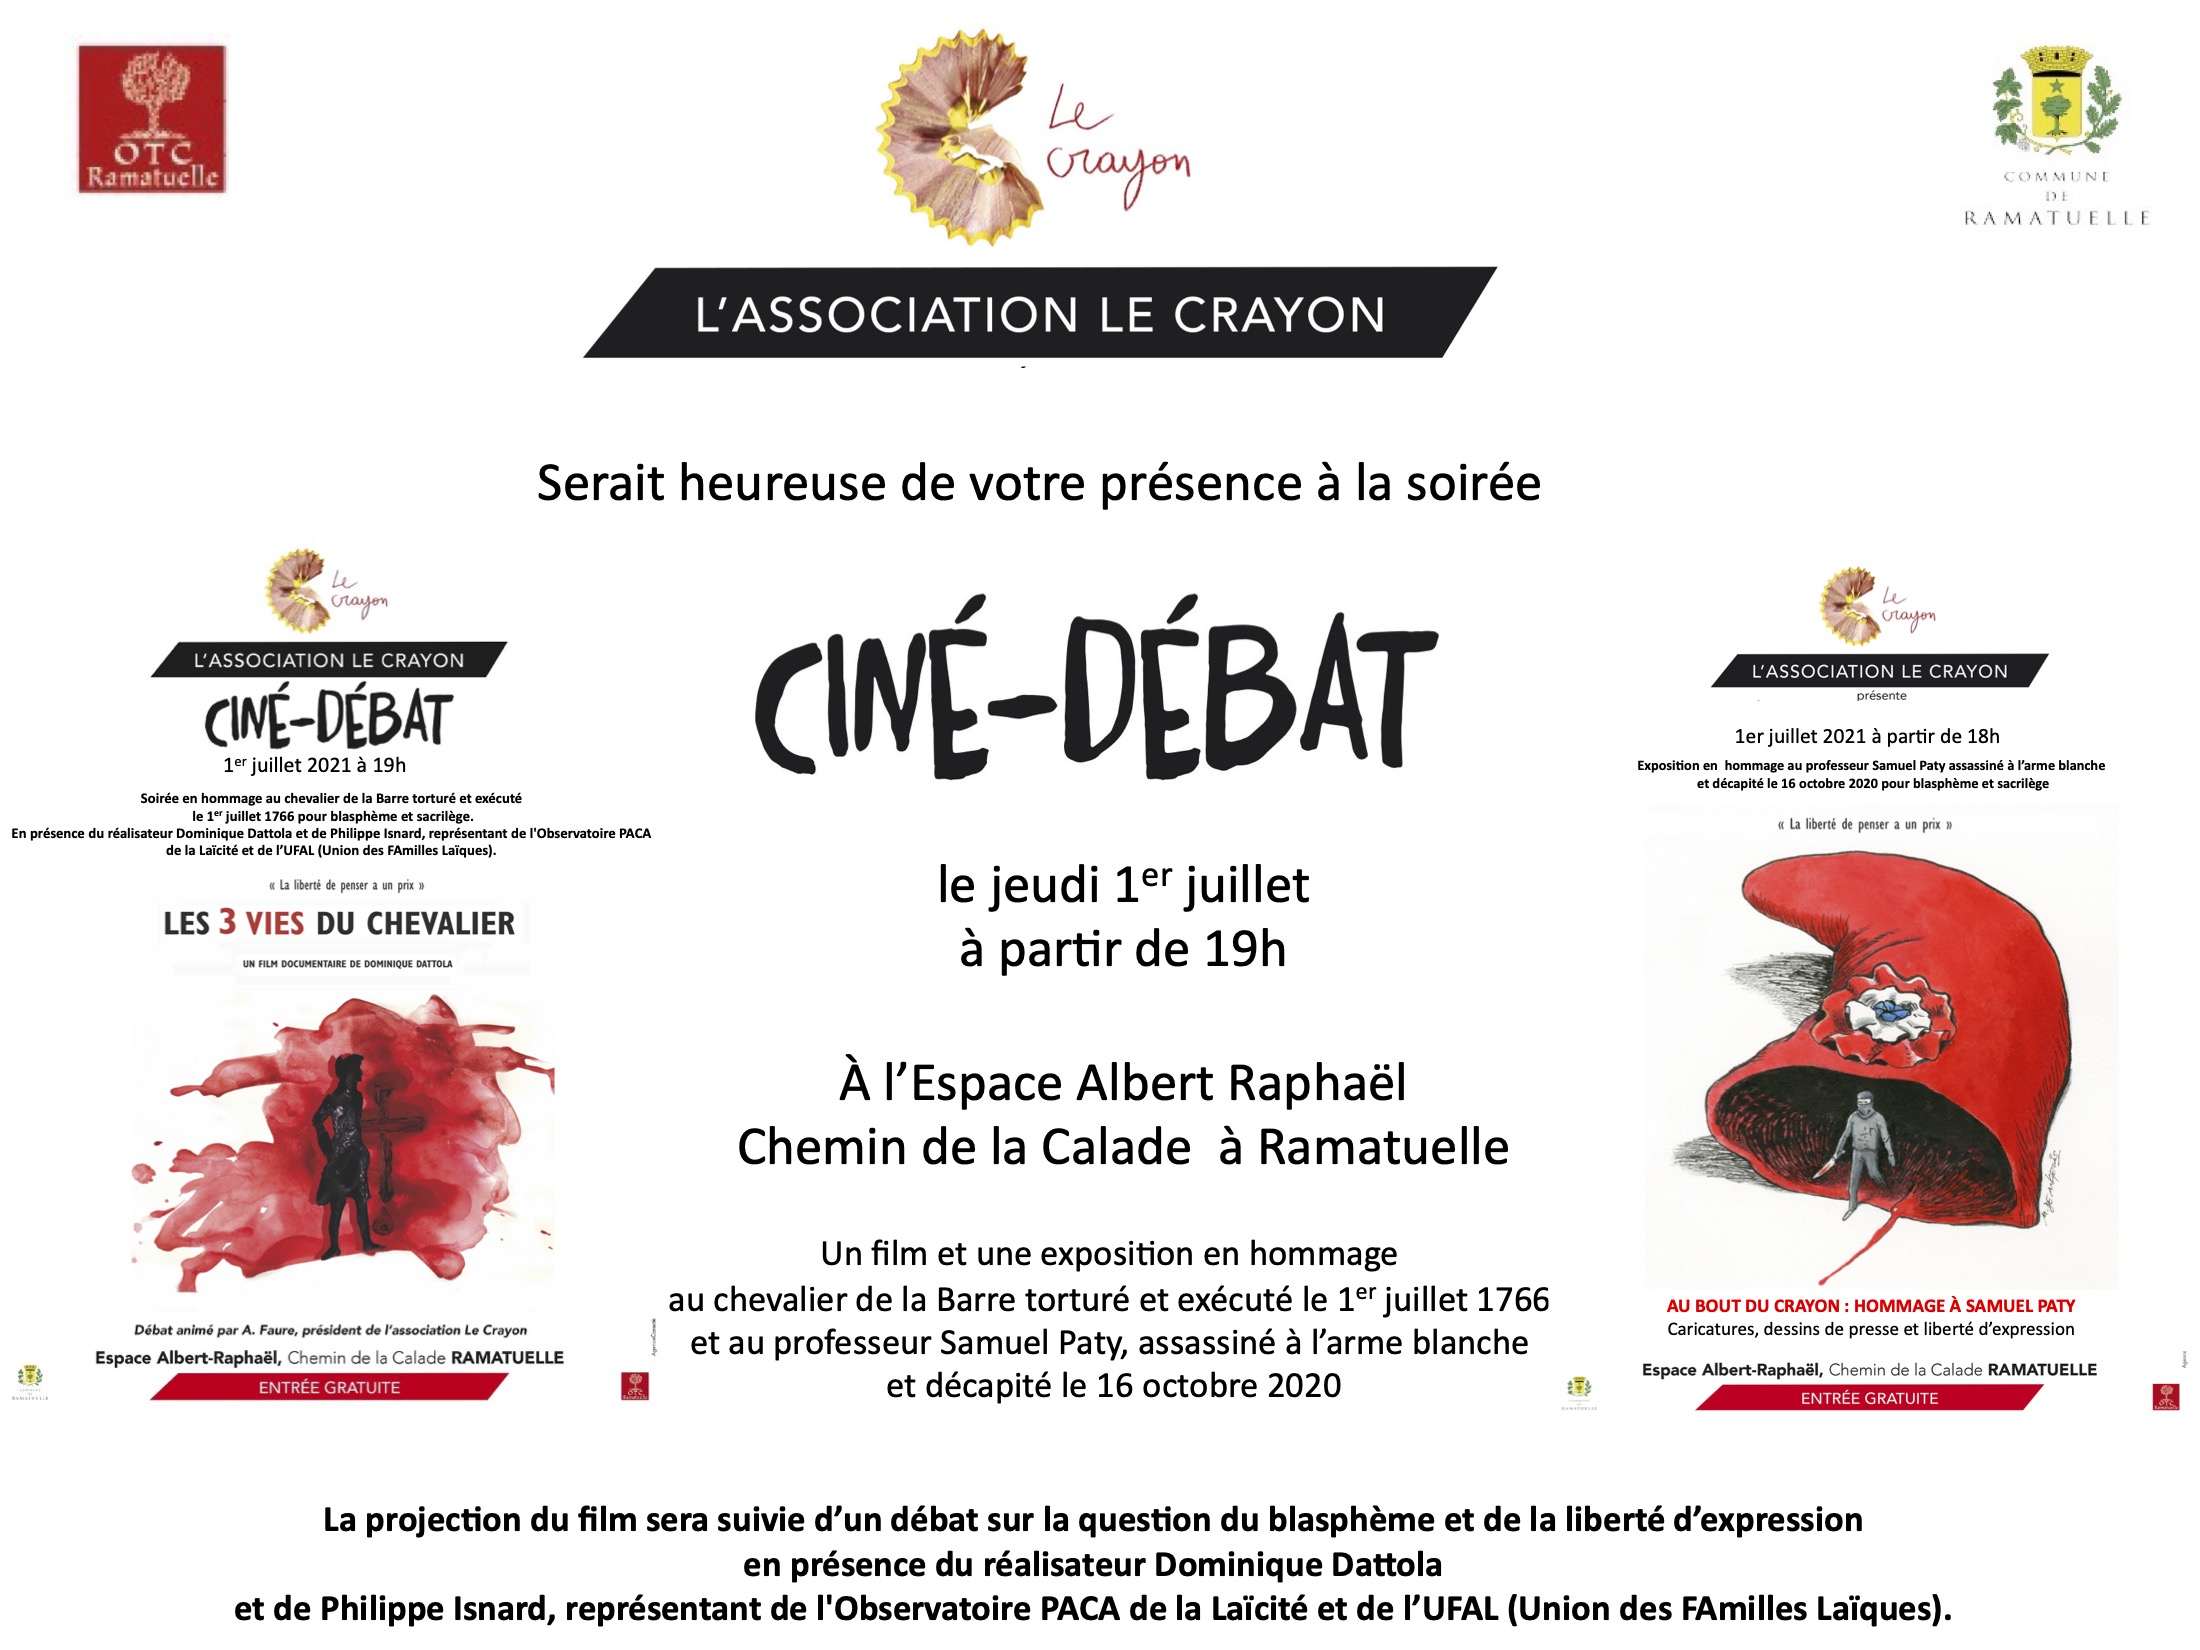 Expo-hommage à S. Paty et ciné-débat (les 3 vies du Chevalier de la barre) à Ramatuelle le 1er juillet @ Espace Albert Raphaël